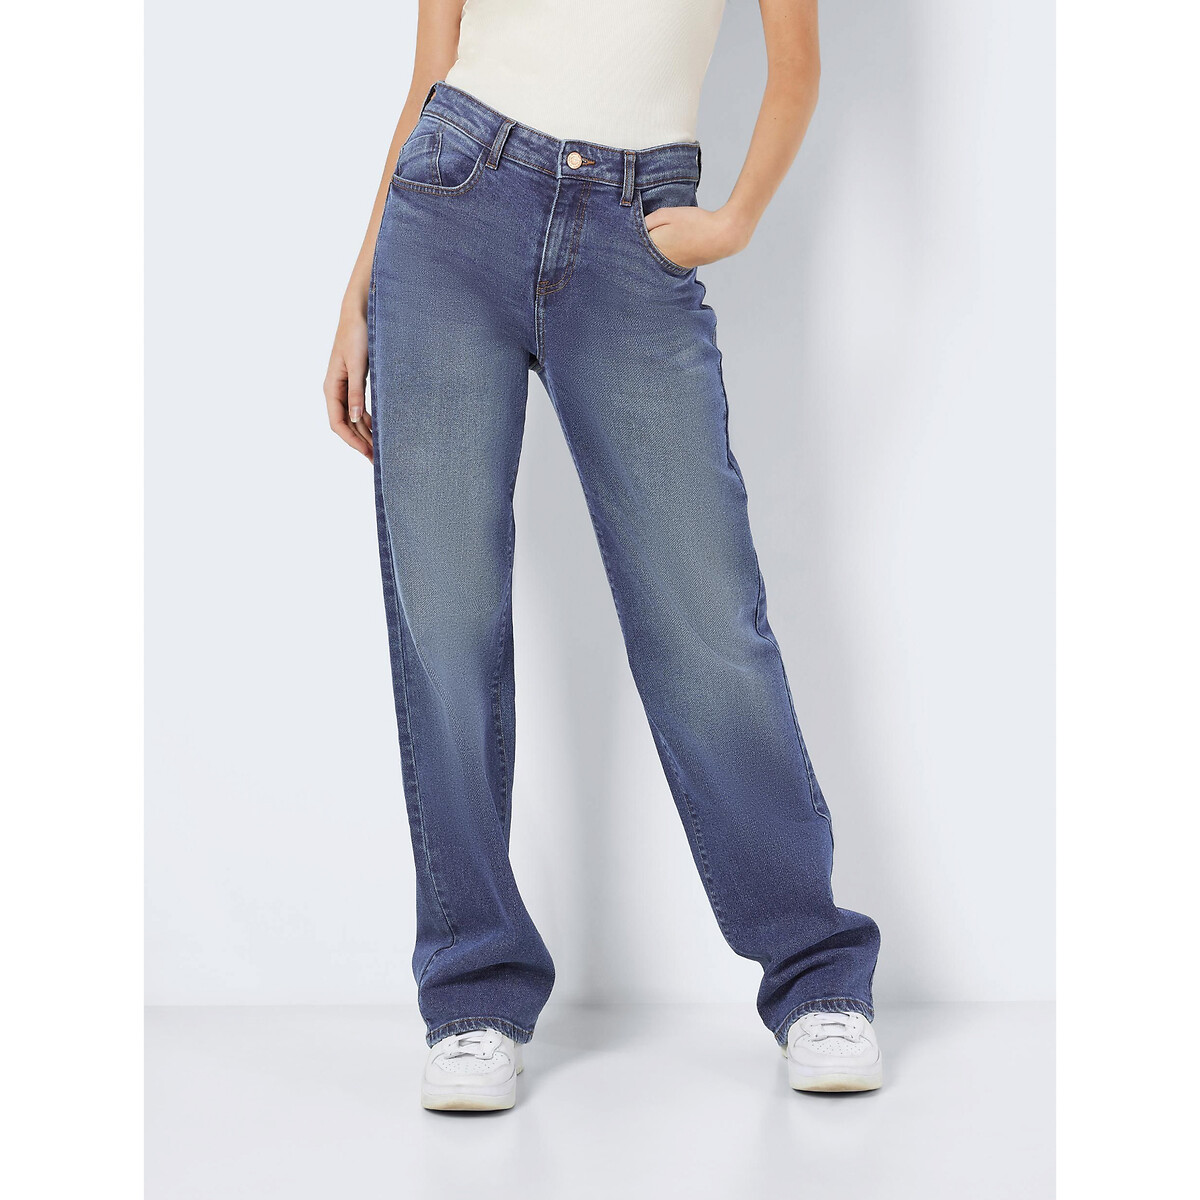 Джинсы широкие средняя посадка 27/30 синий джинсы широкие krapiva прилегающие средняя посадка размер 30 32 синий